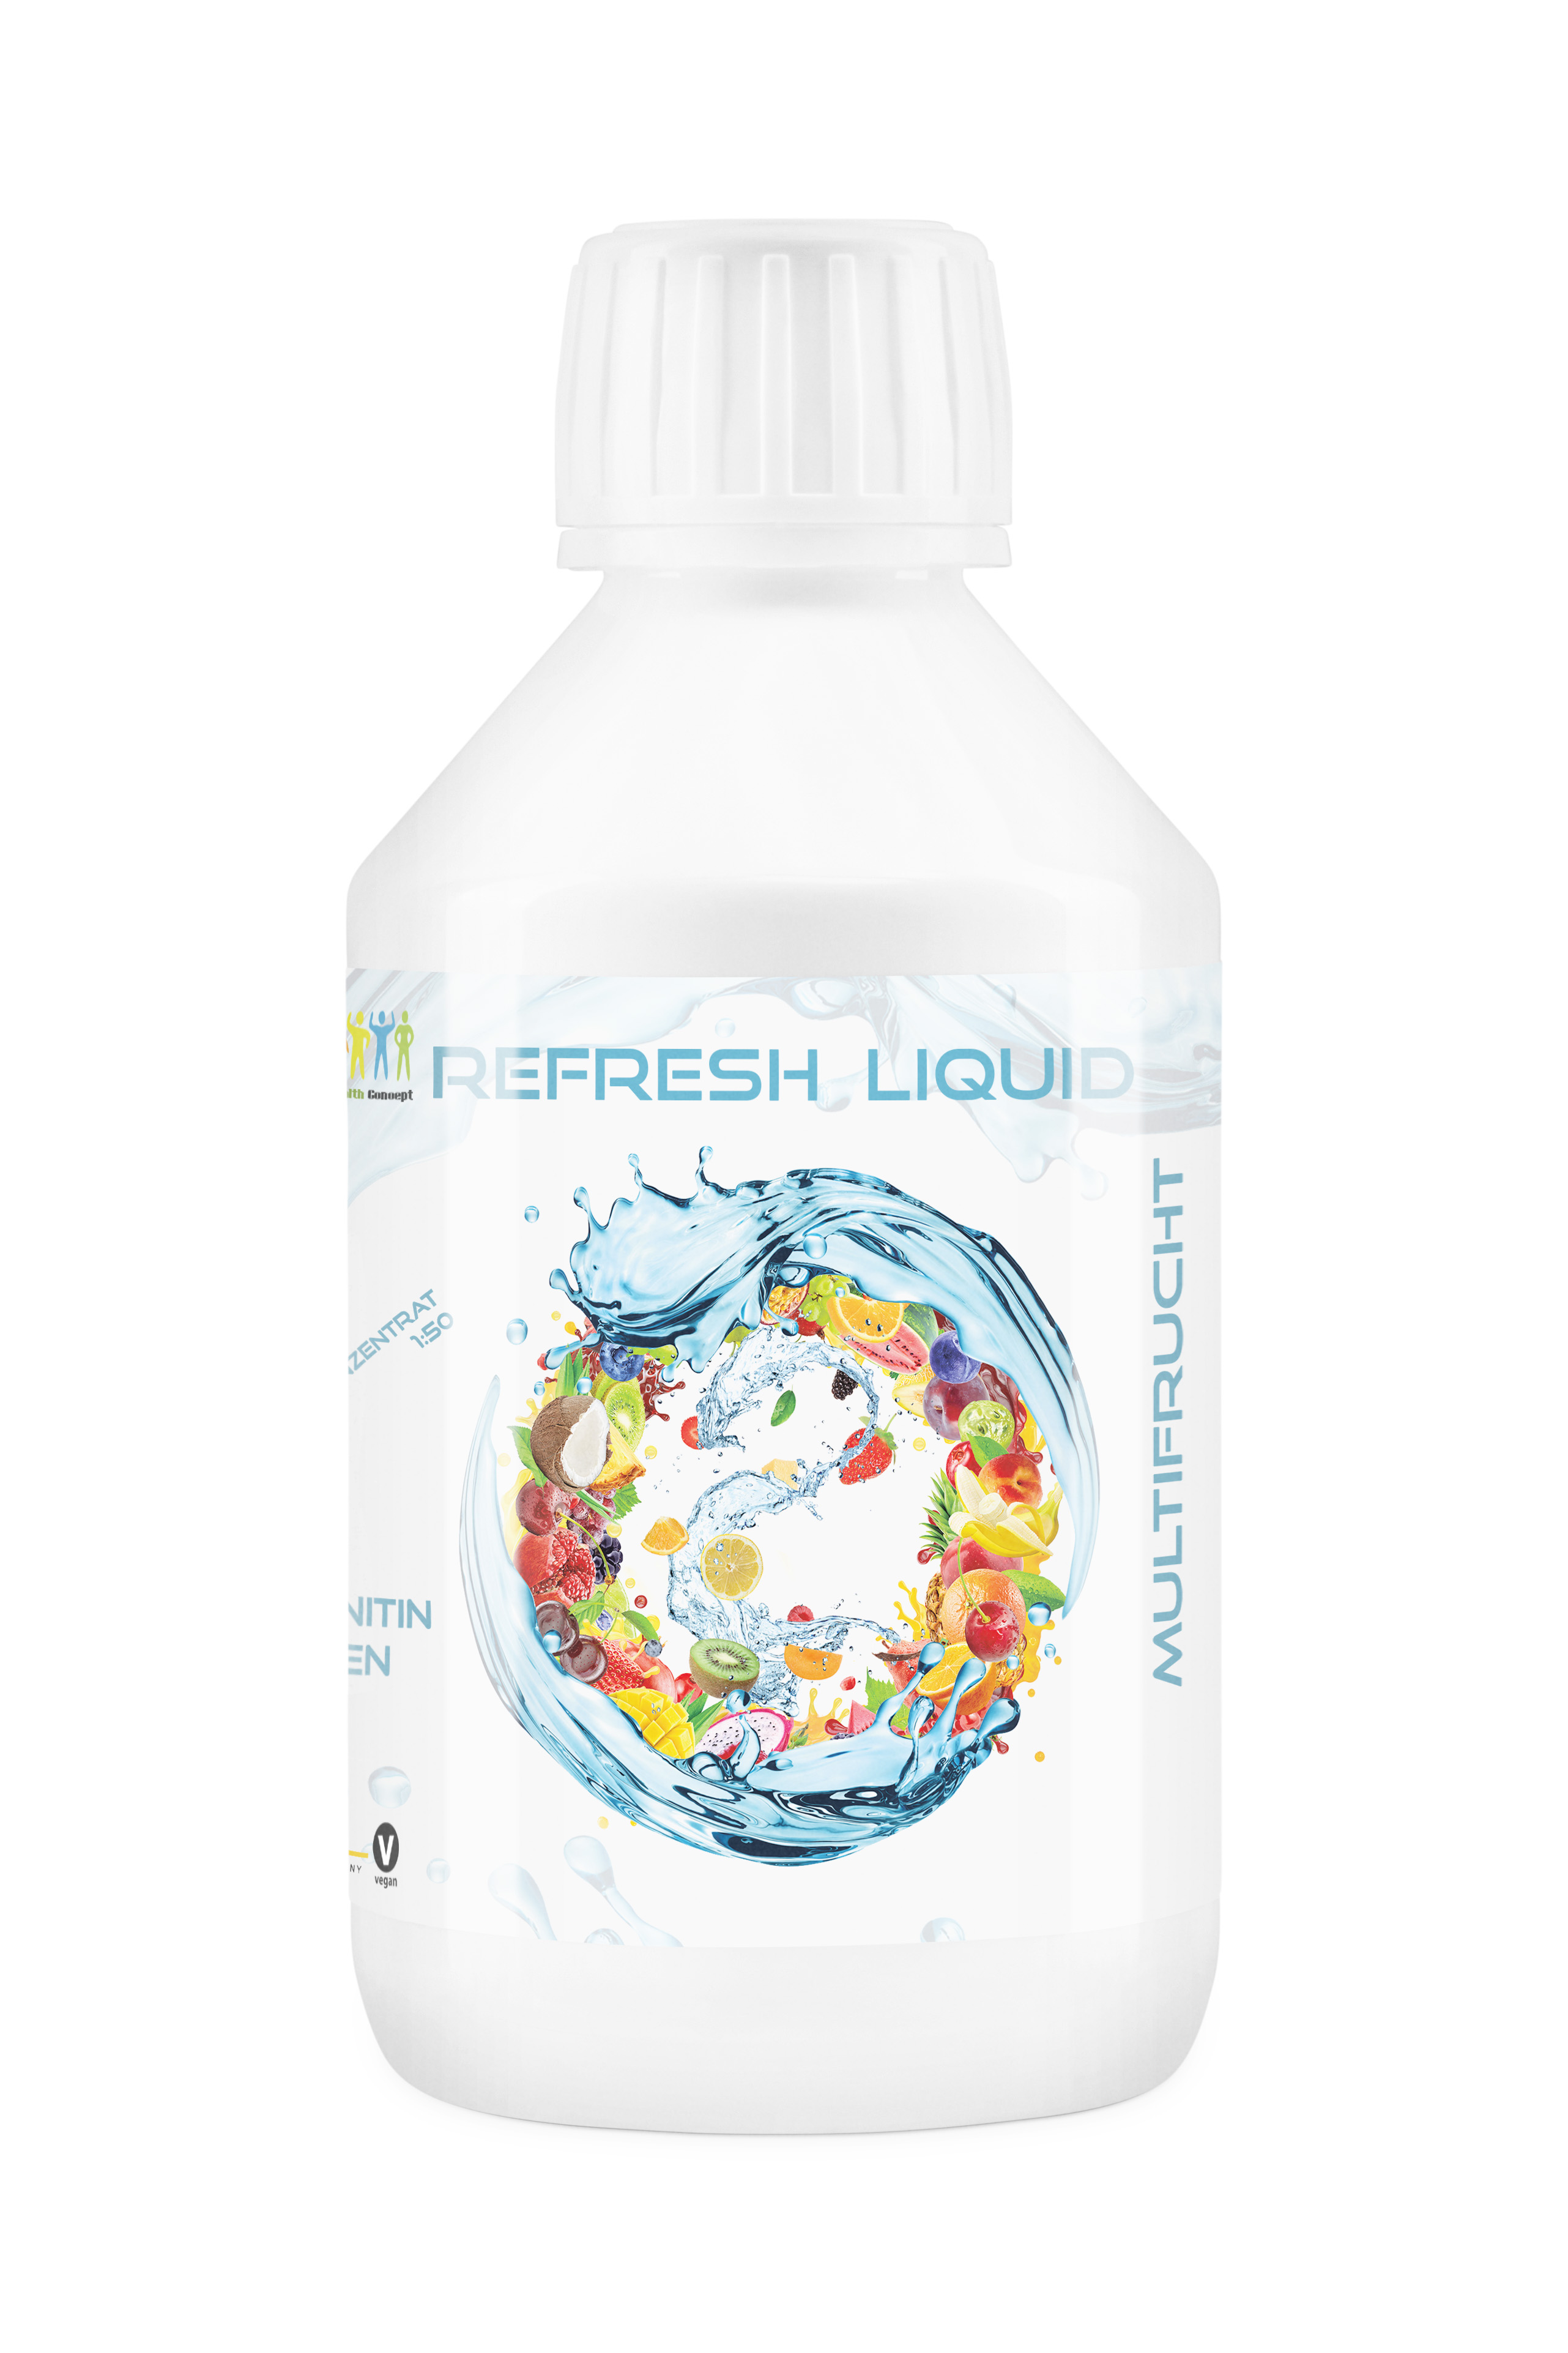 HC Refresh Liquid Multifrucht Konzentrat 1zu150 - Zuckerfreier Sirup